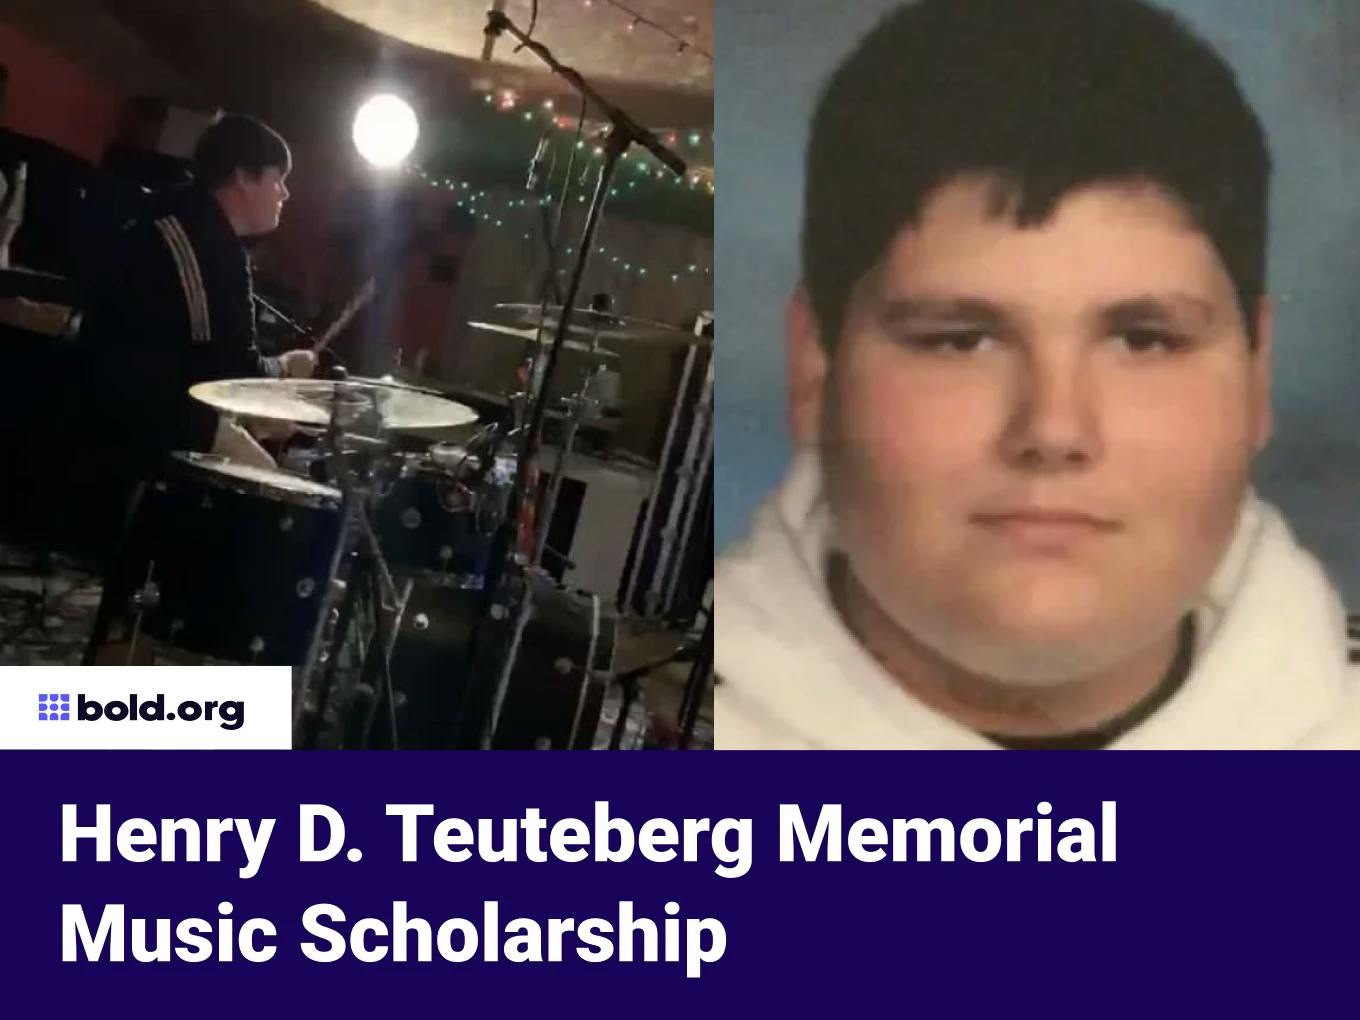 Henry D. Teuteberg Memorial Music Scholarship